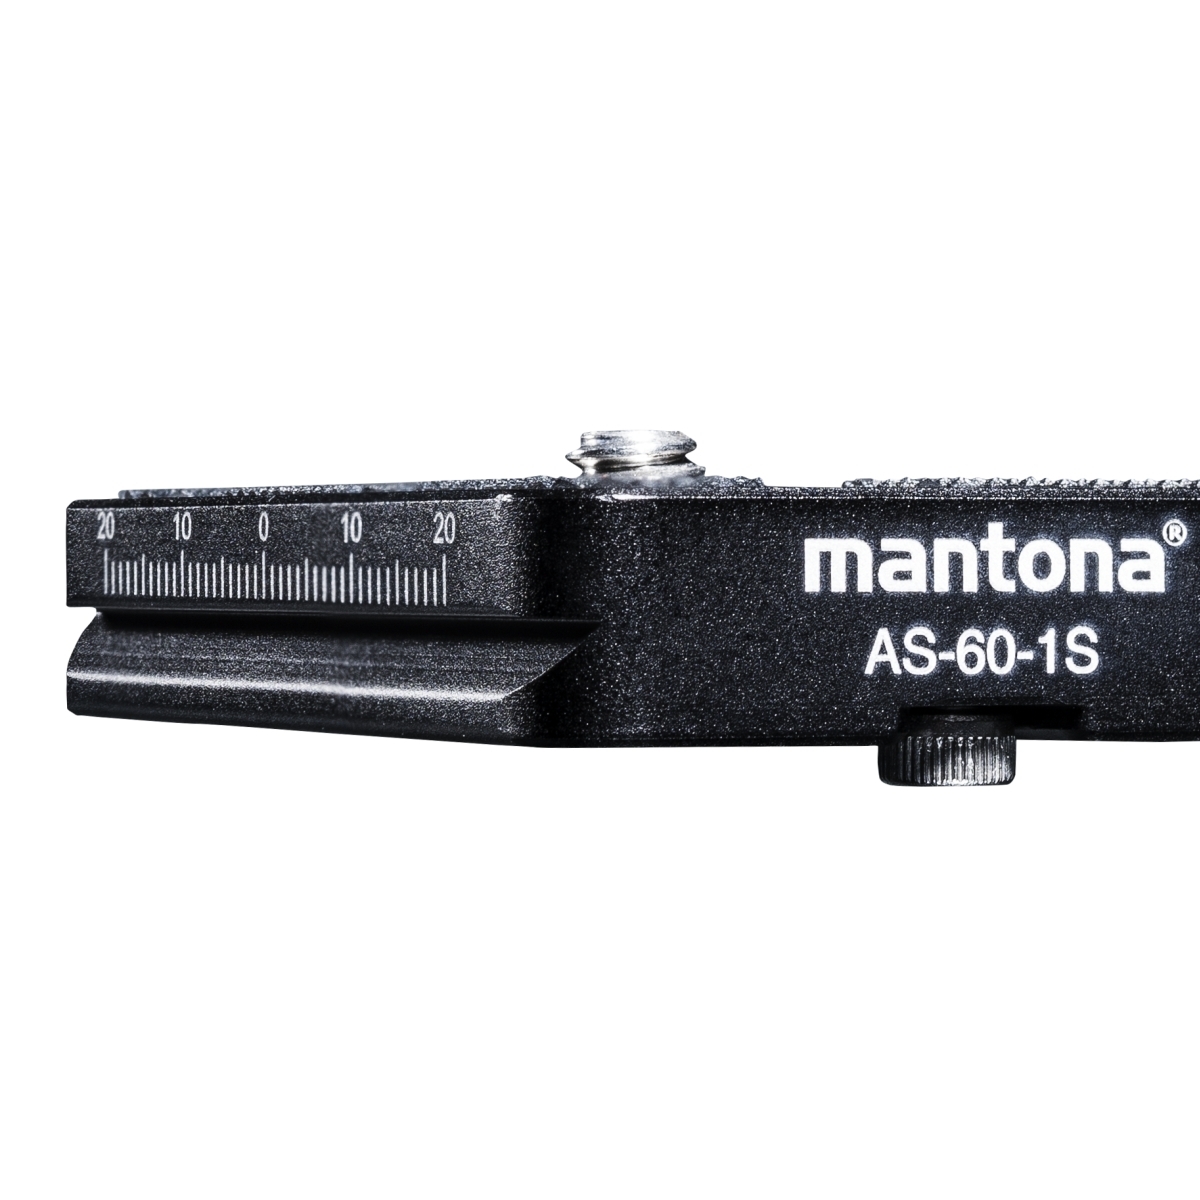 60 mm arca-Swiss compatibles Mantona as-60-1s rápido cambio placa escala